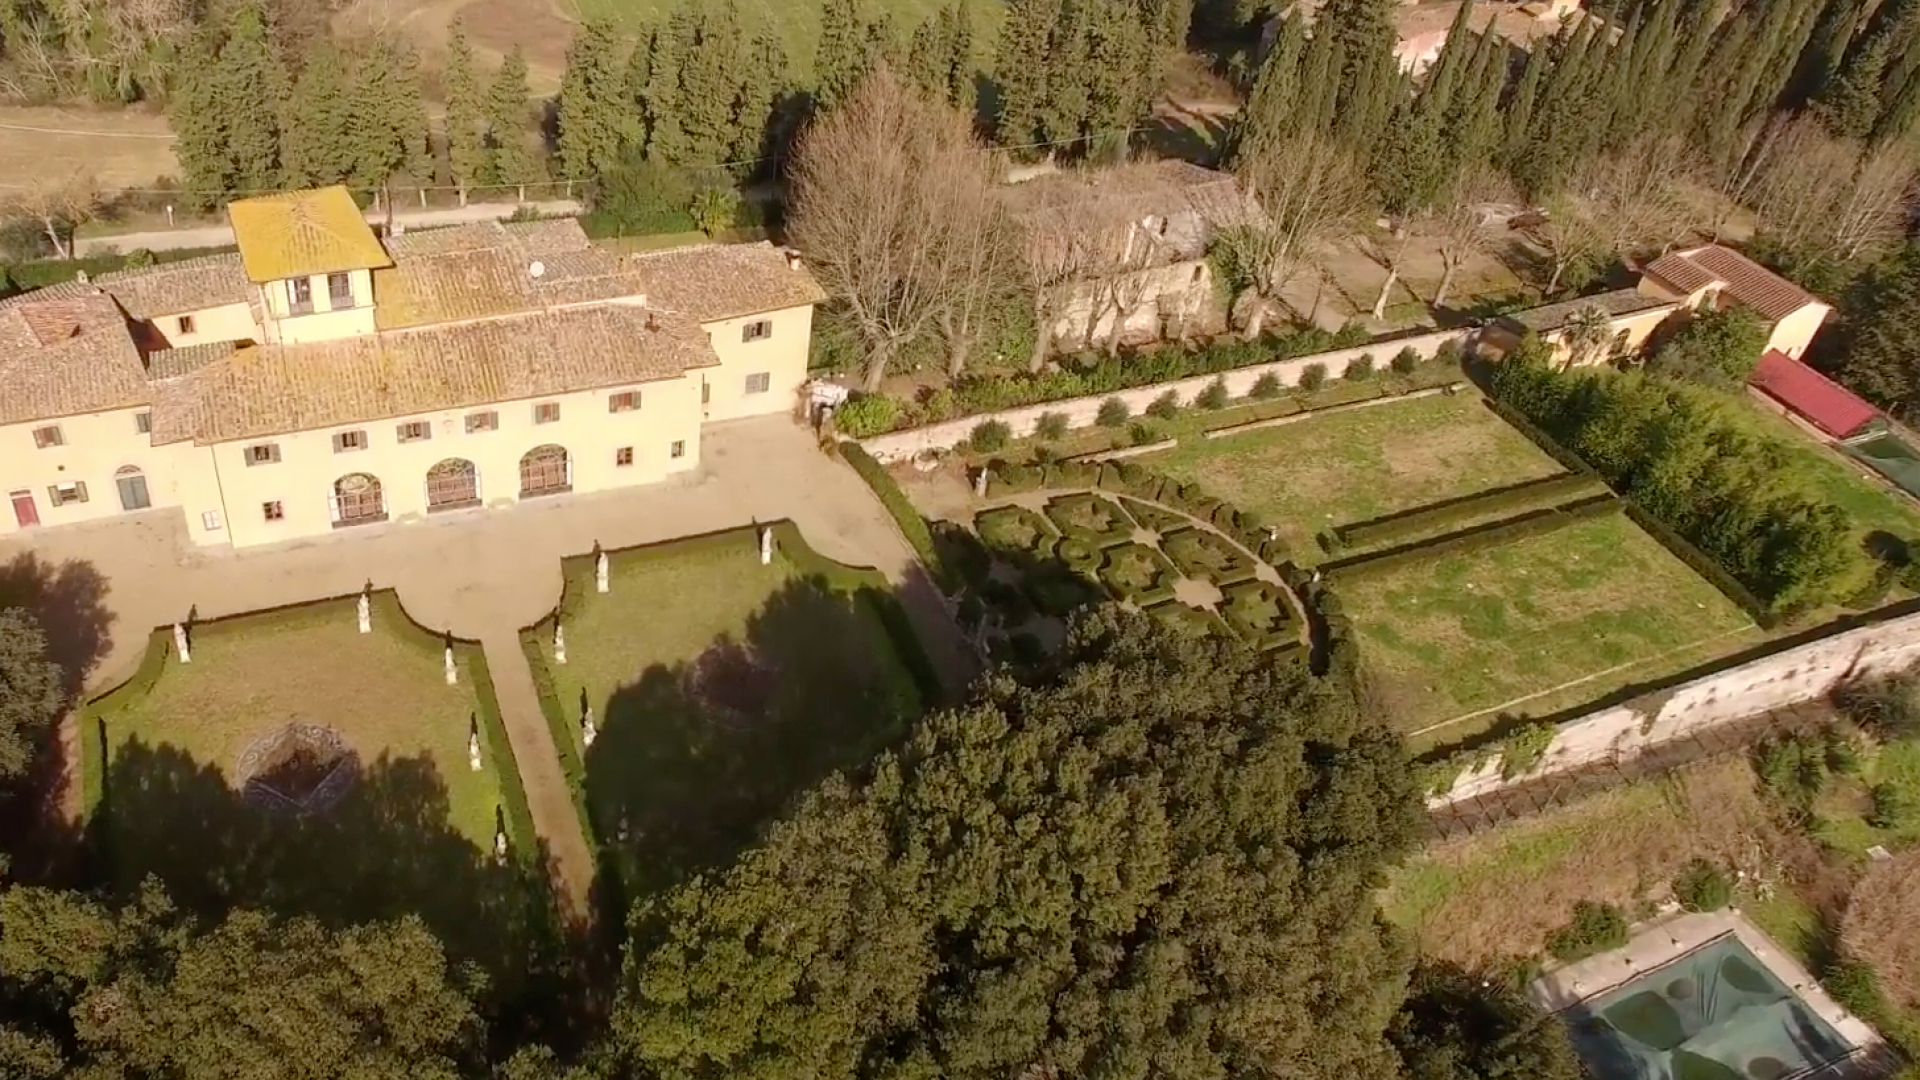 Villa de Meleto en Castelfiorentino